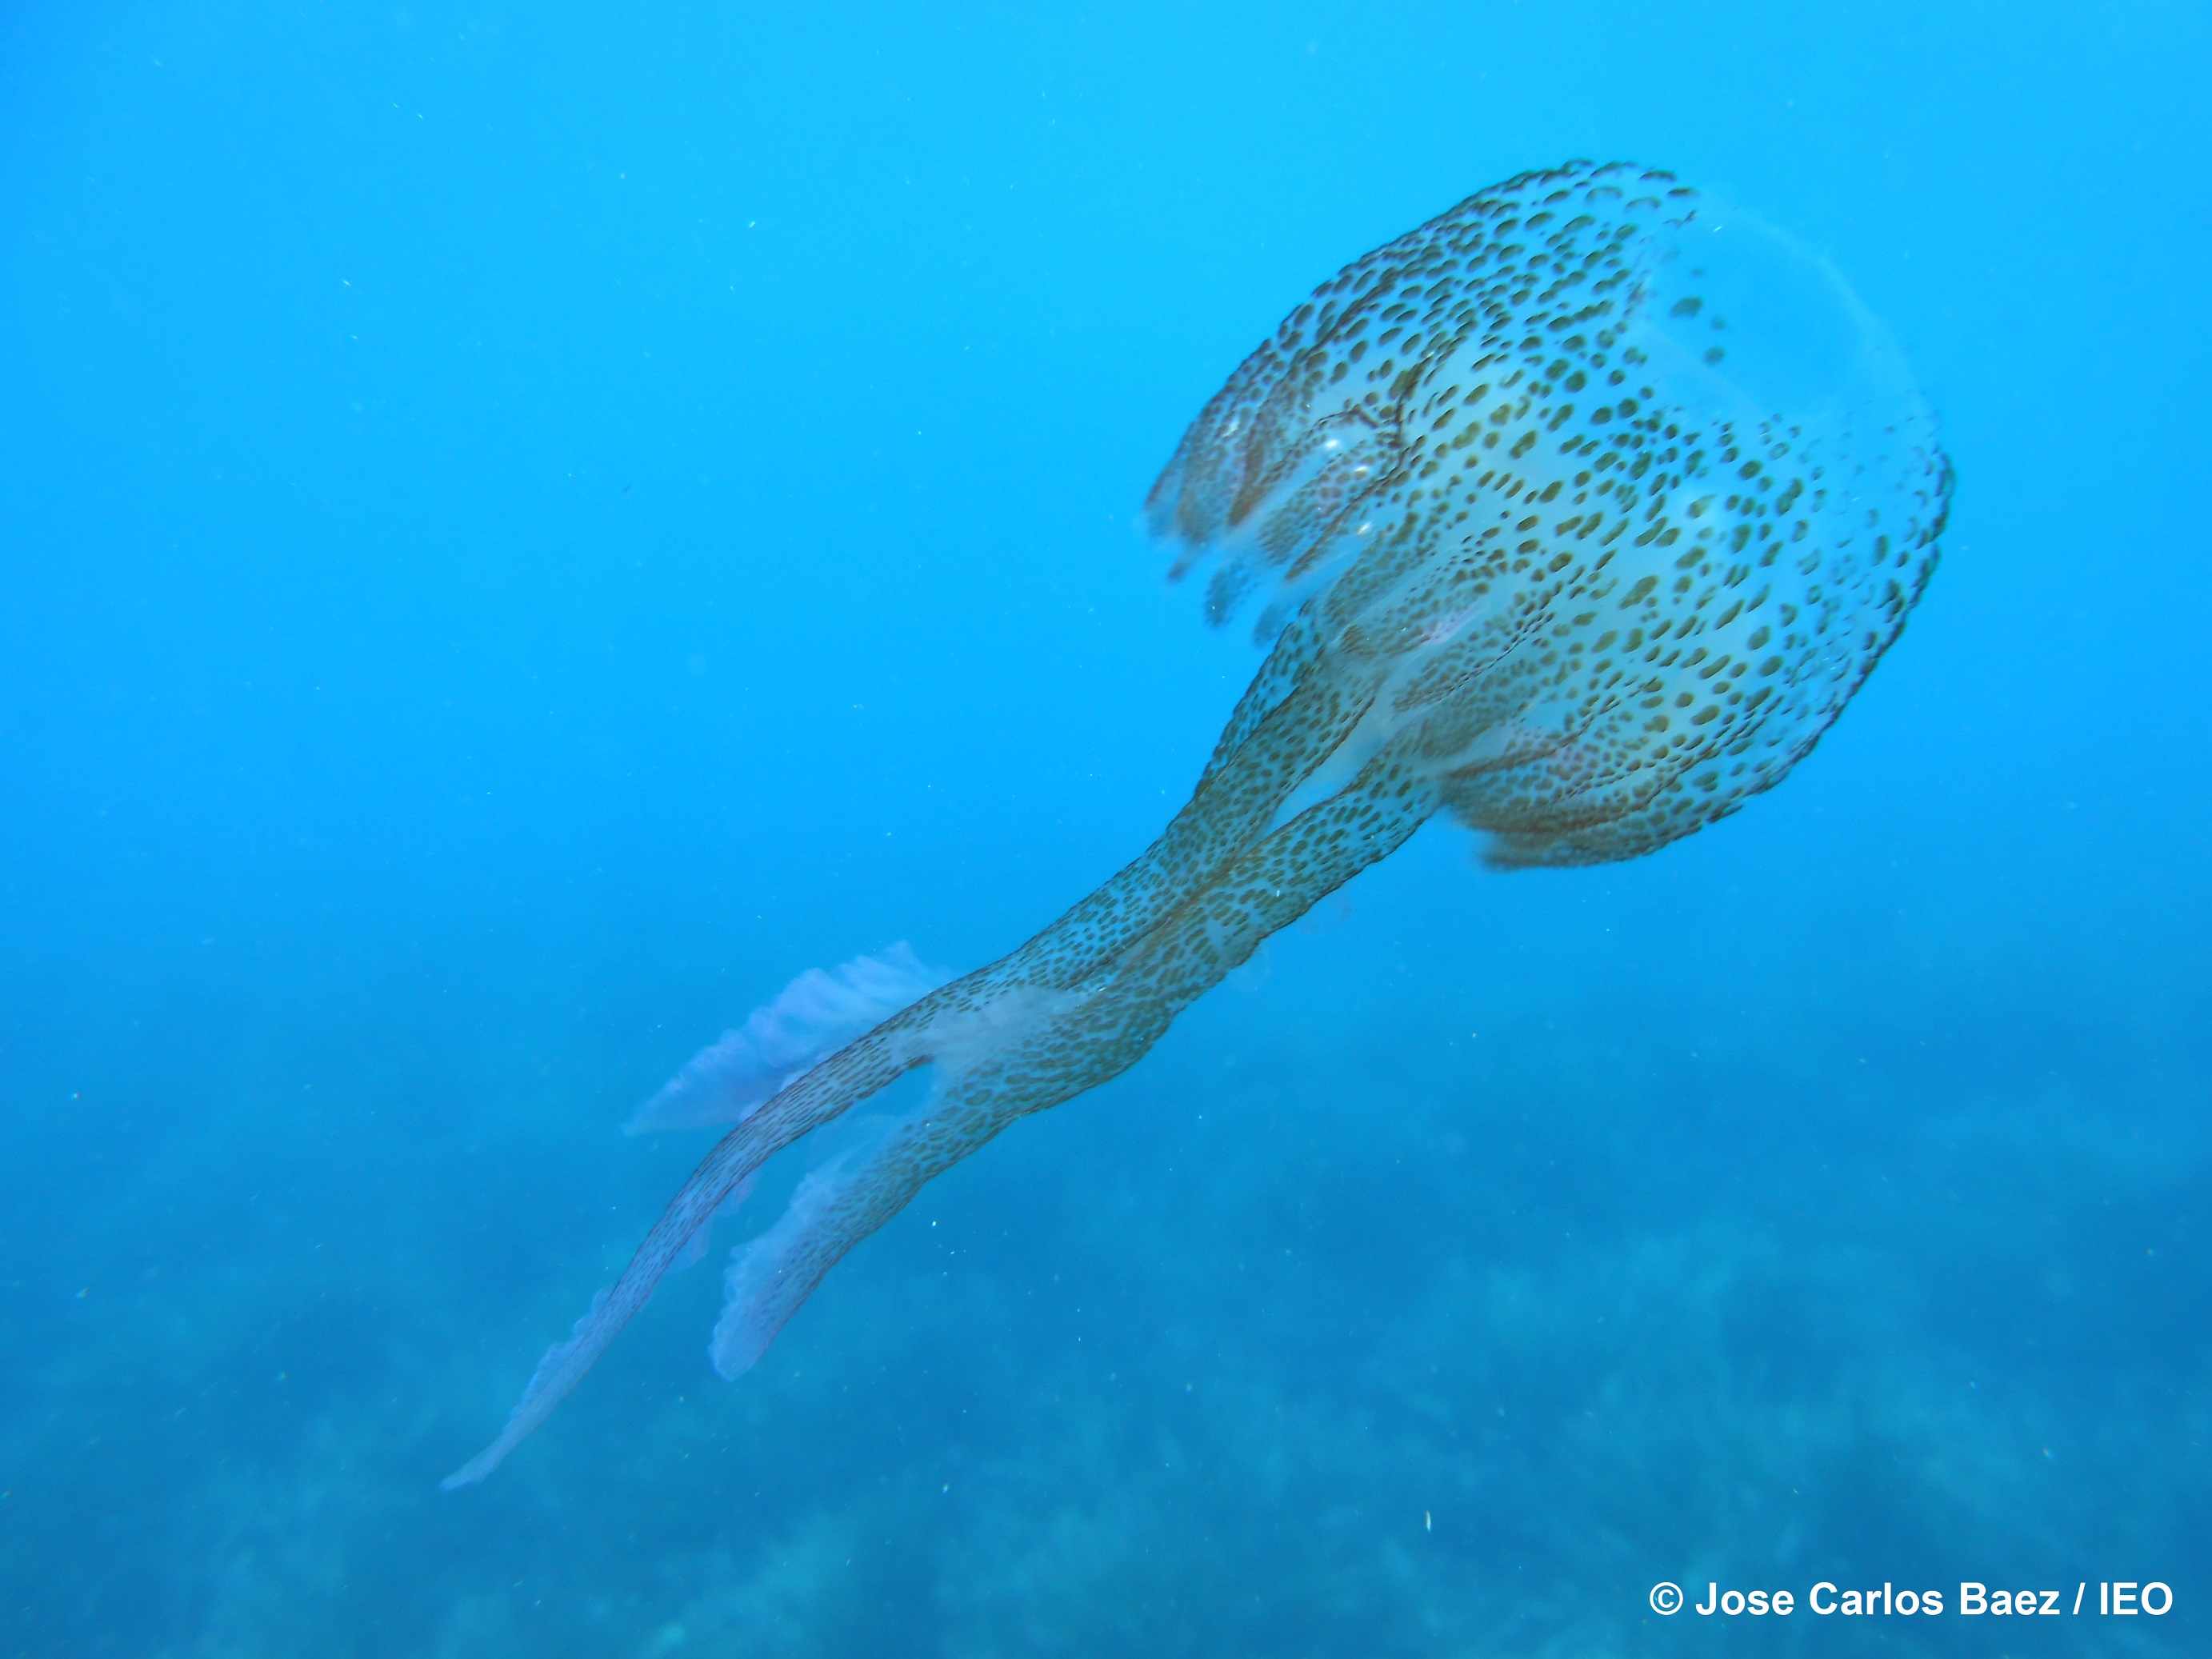 Ejemplar de la medusa Pelagia nocticula, muy abundante en el Mediterráneo